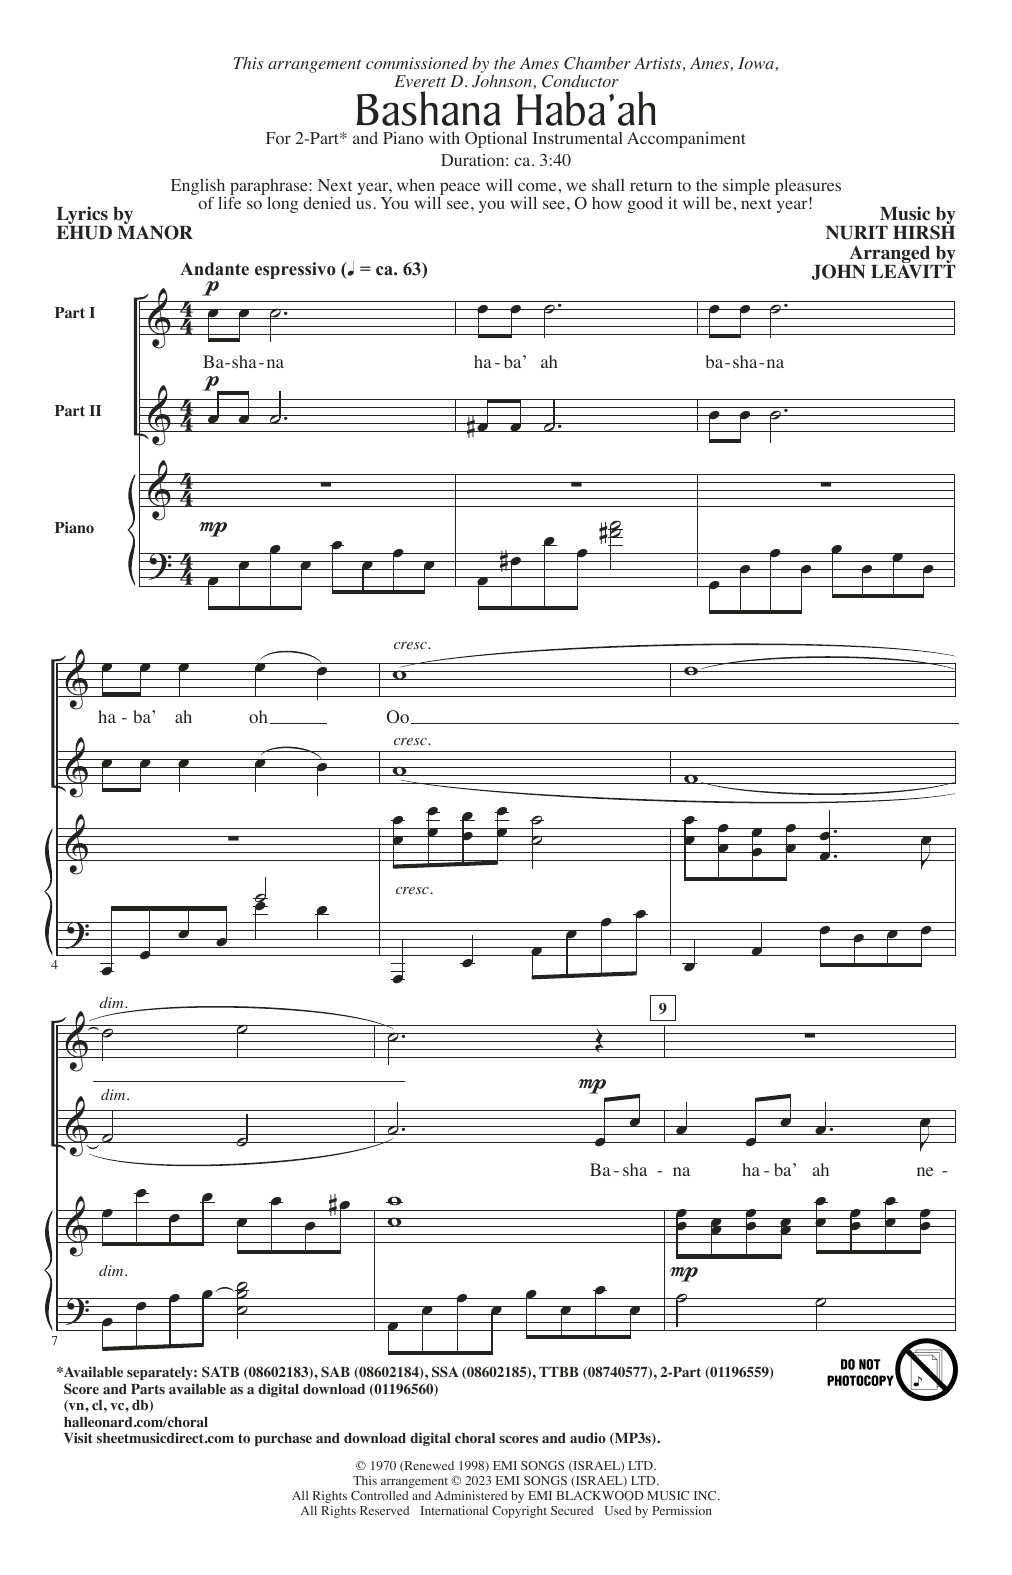 Nurit Hirsh Bashana Haba 'Ah (arr. John Leavitt) Sheet Music Notes & Chords for 2-Part Choir - Download or Print PDF